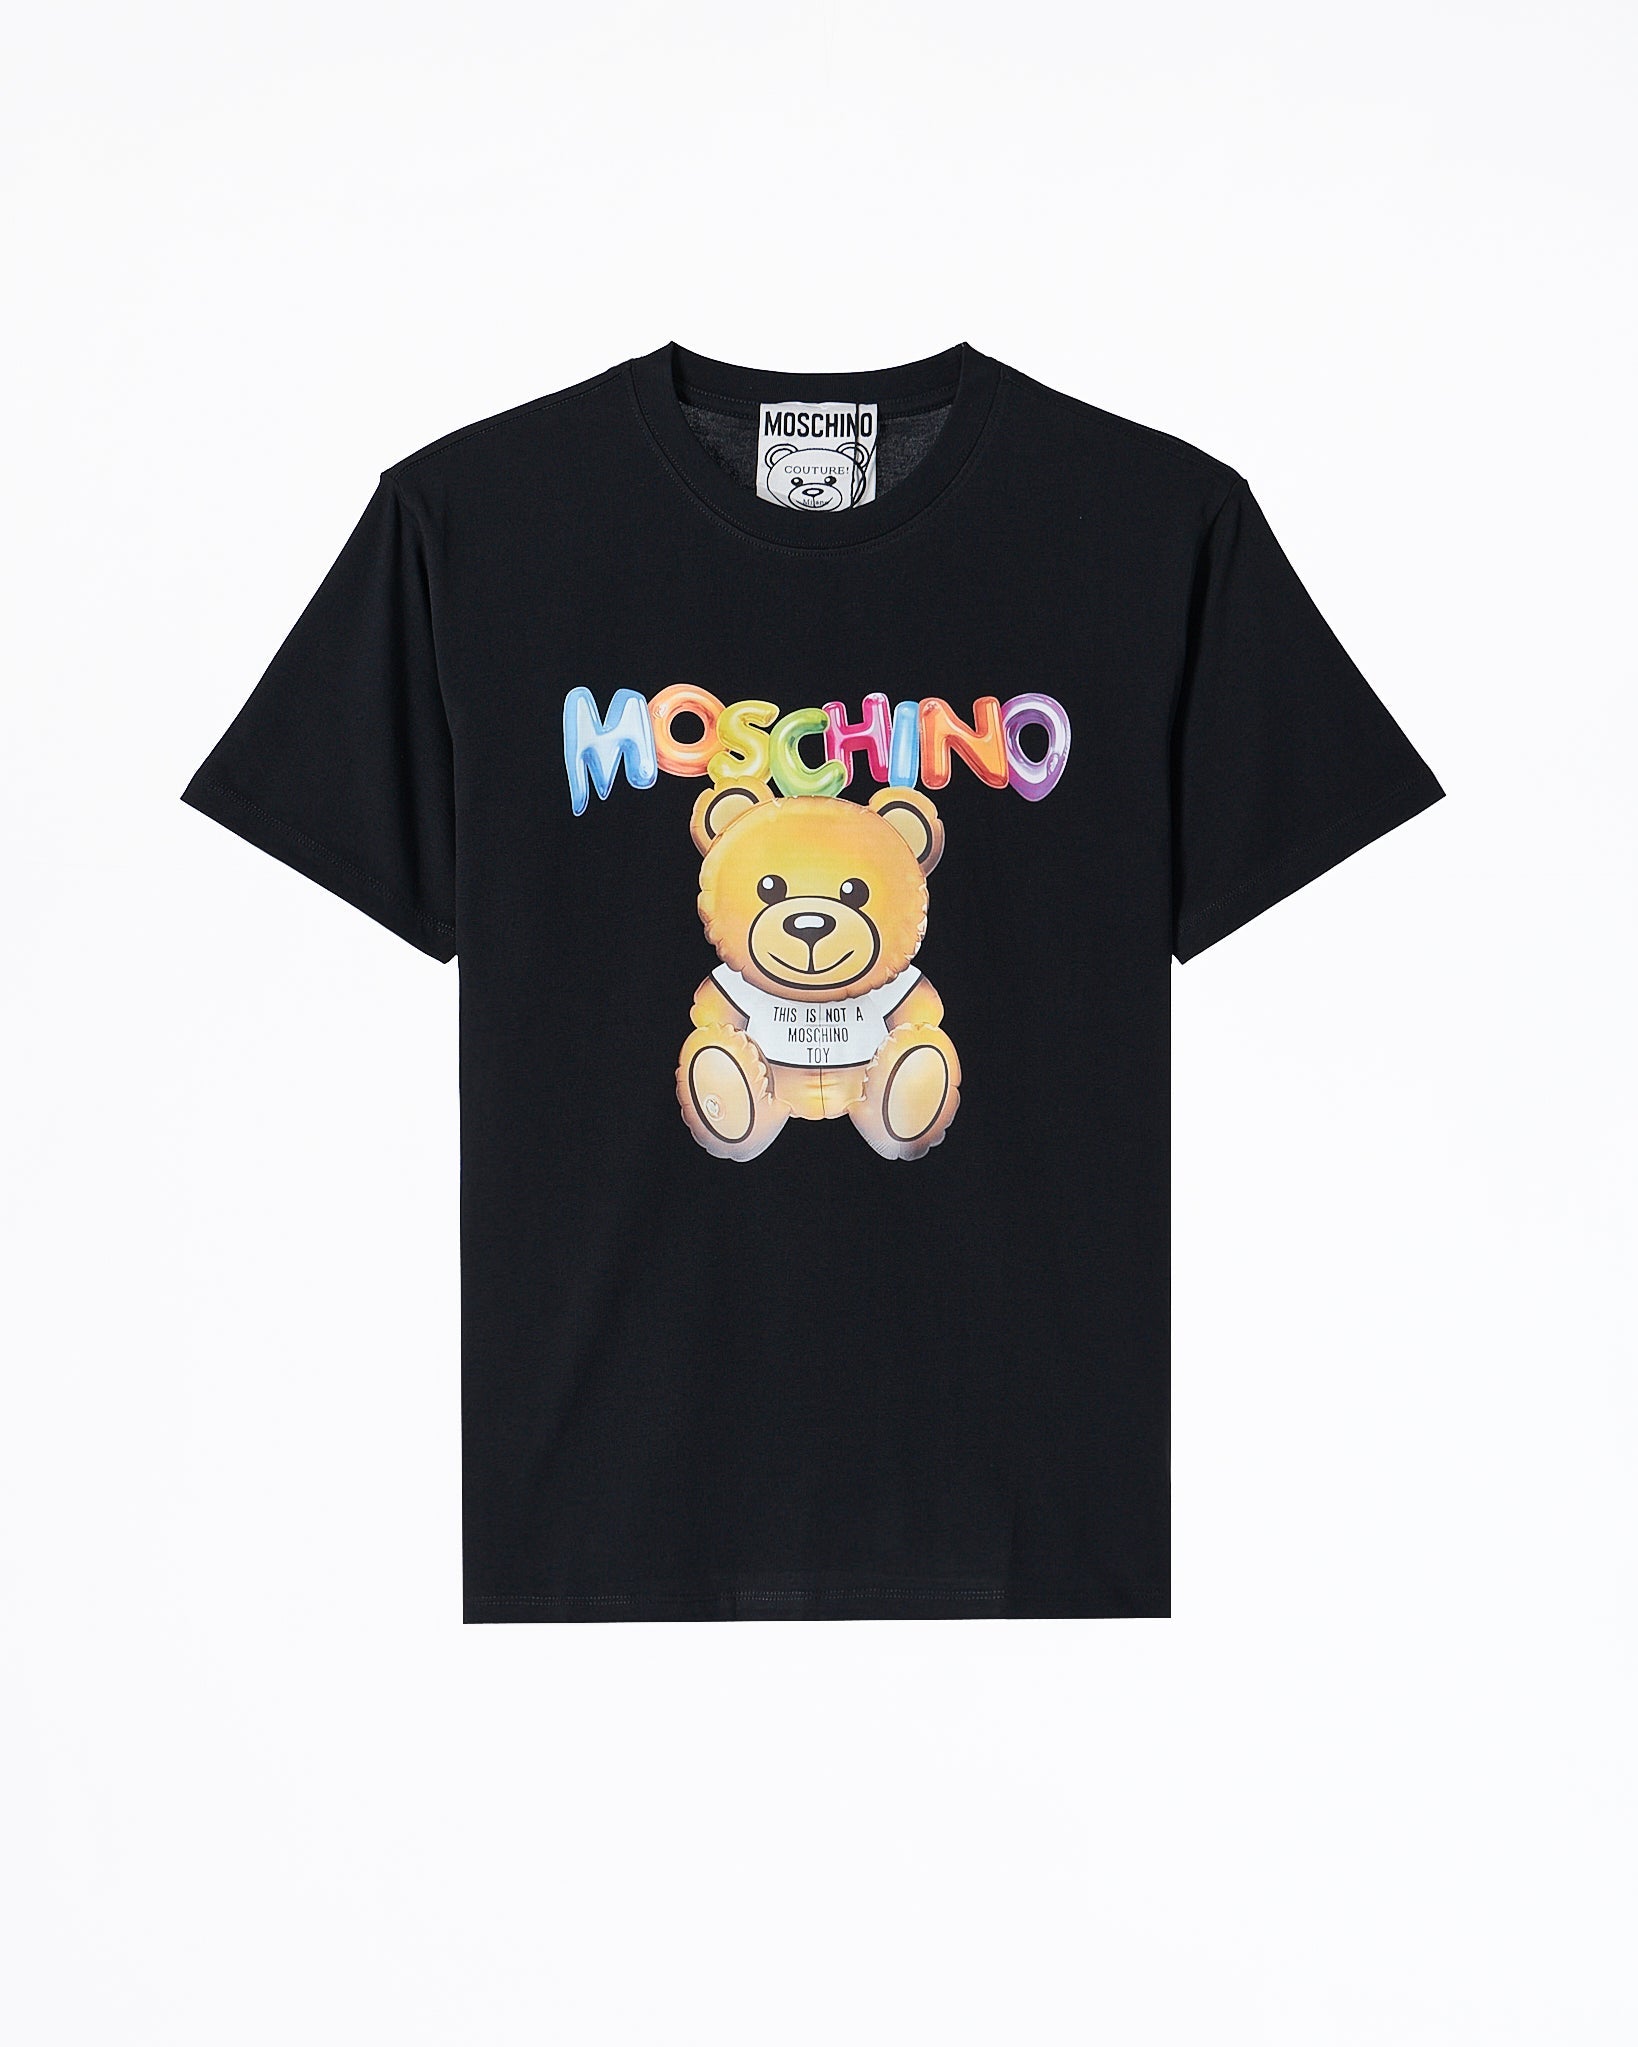 MOI OUTFIT-MOS Teddy Bear Unisex Black T-Shirt 23.90